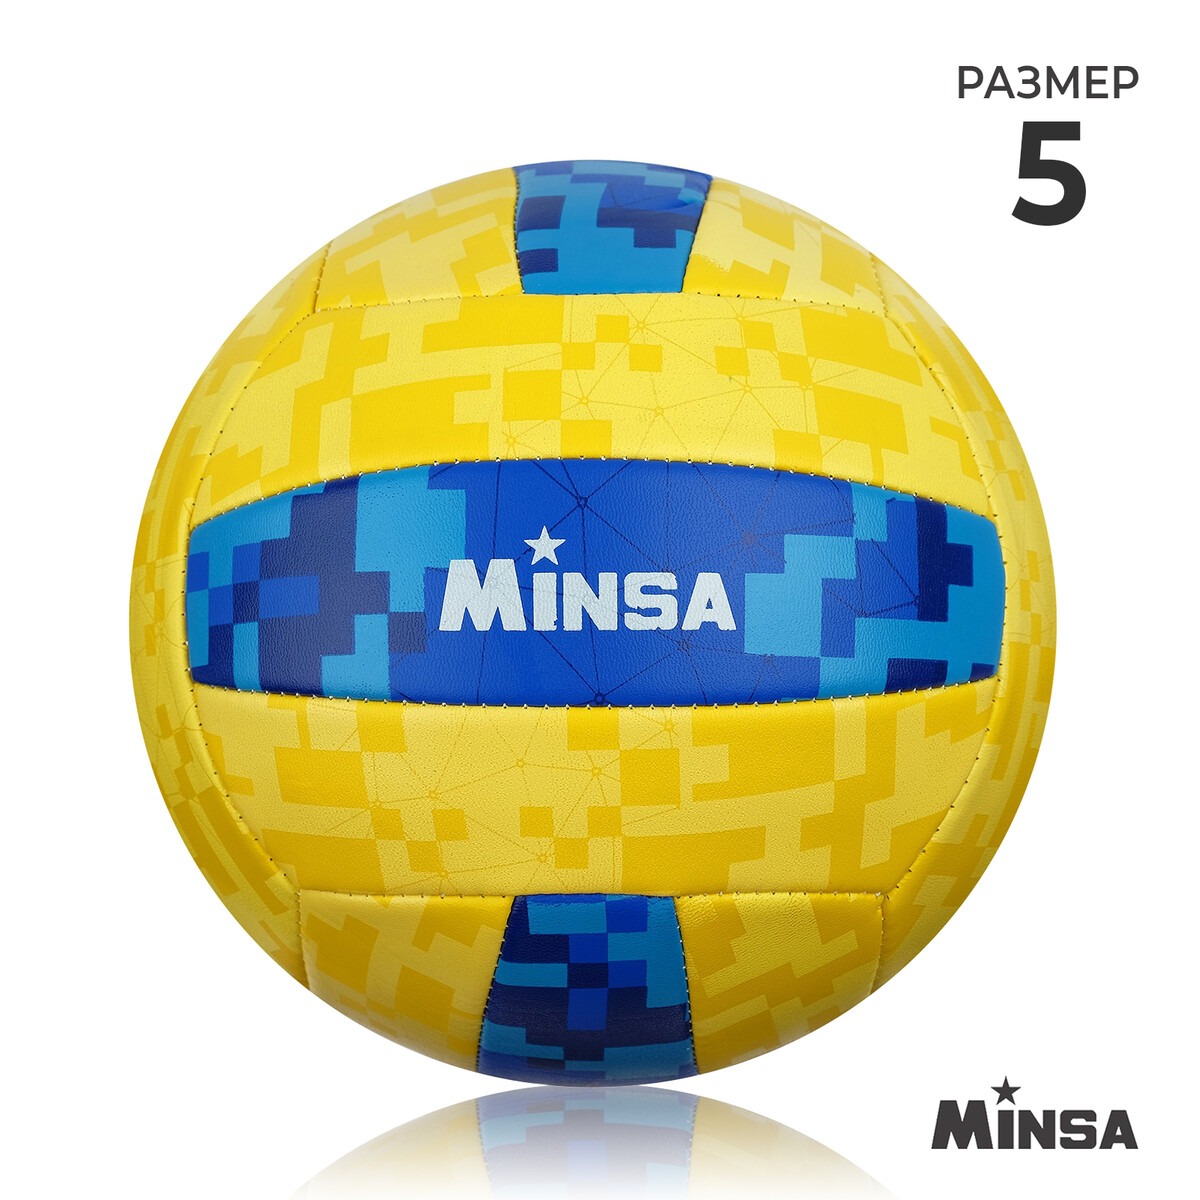 Мяч волейбольный minsa, пвх, машинная сшивка, 18 панелей, р. 5 мяч волейбольный minsa pu машинная сшивка 18 панелей р 5